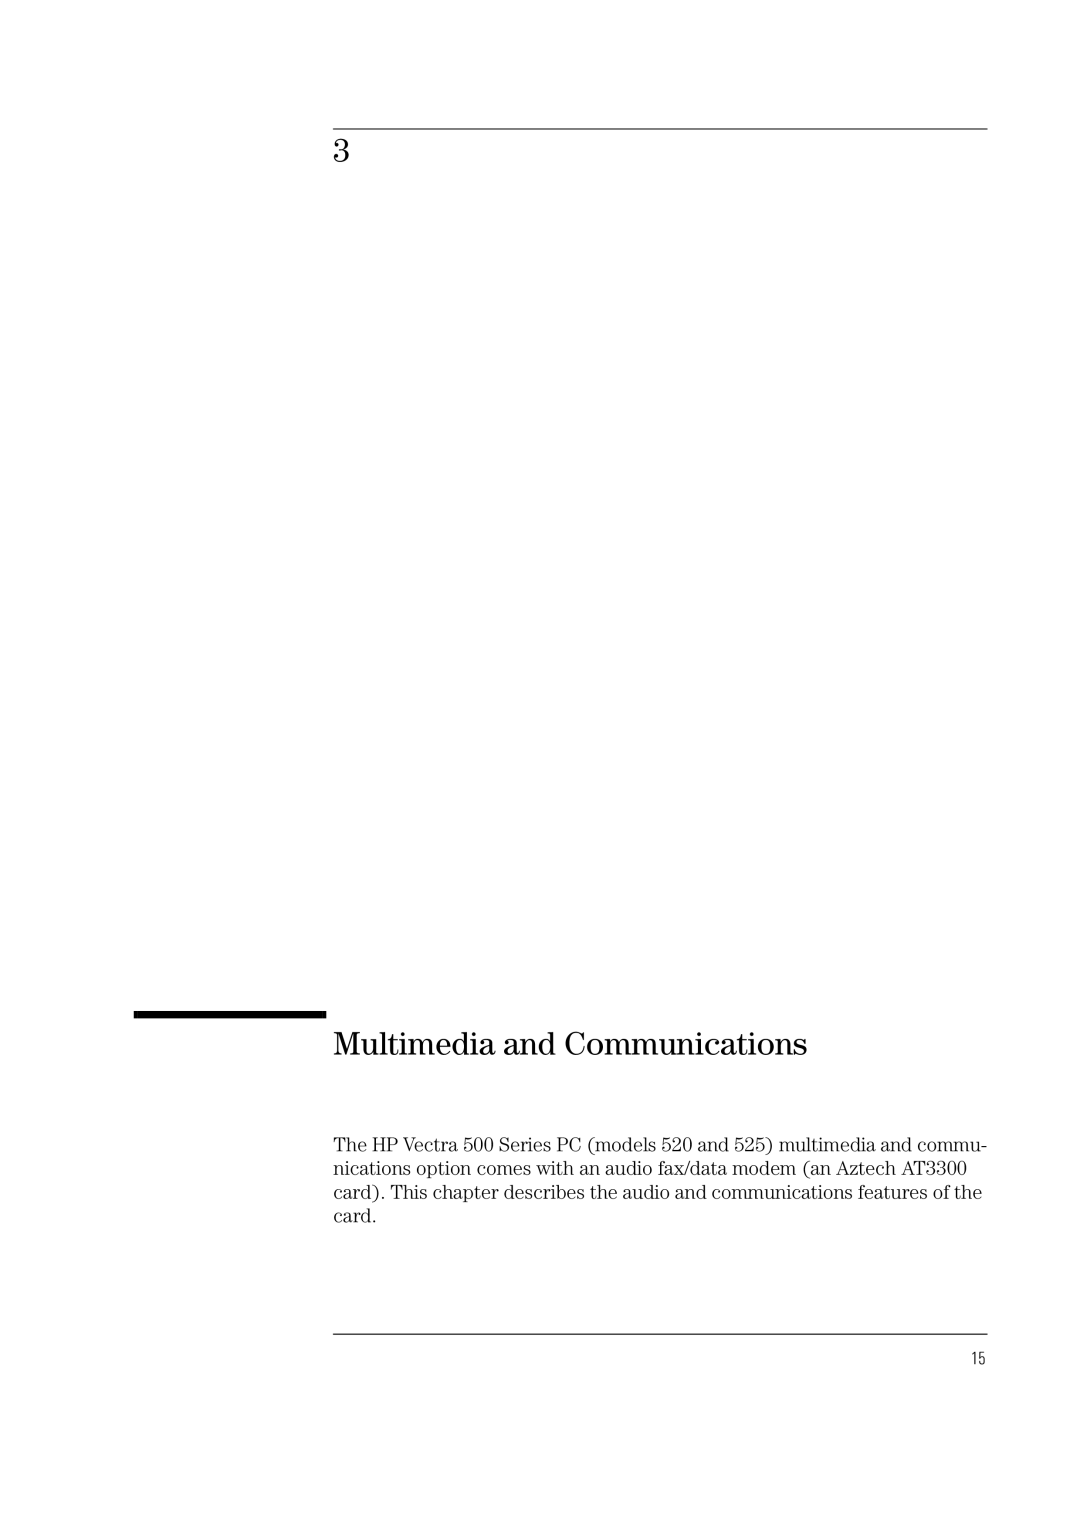 Verbatim 520, 525 manual Multimedia and Communications 